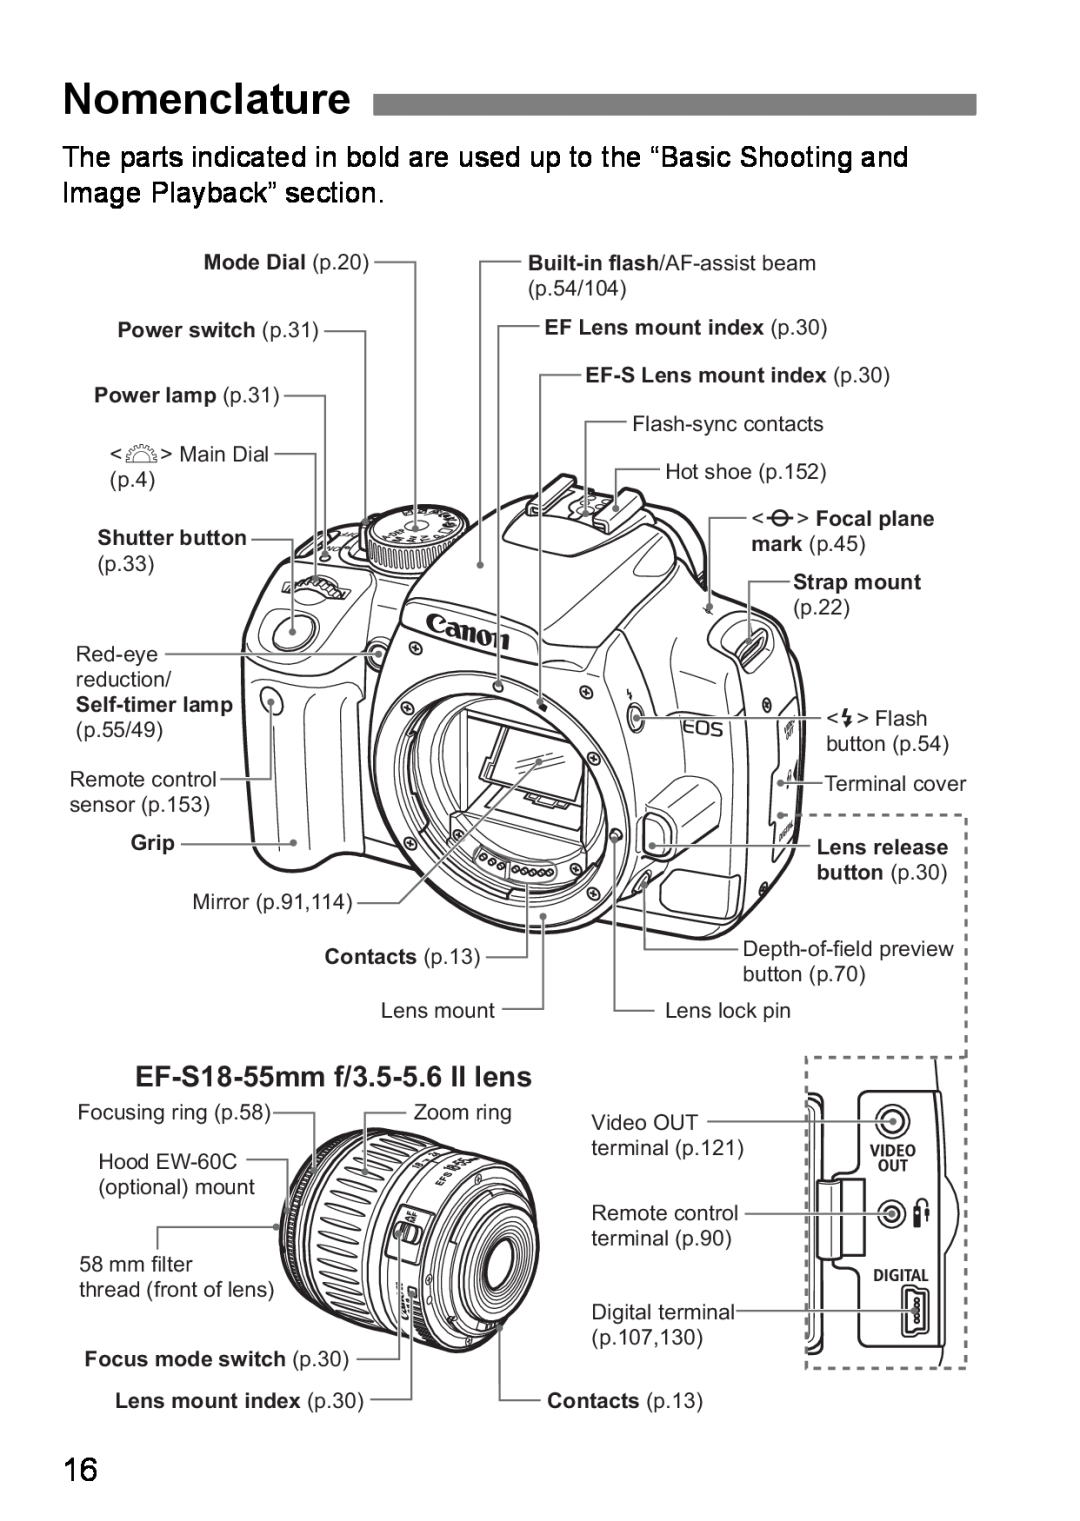 Canon EOS DIGITAL REBEL XTI instruction manual Nomenclature, EF-S18-55mm f/3.5-5.6 II lens 